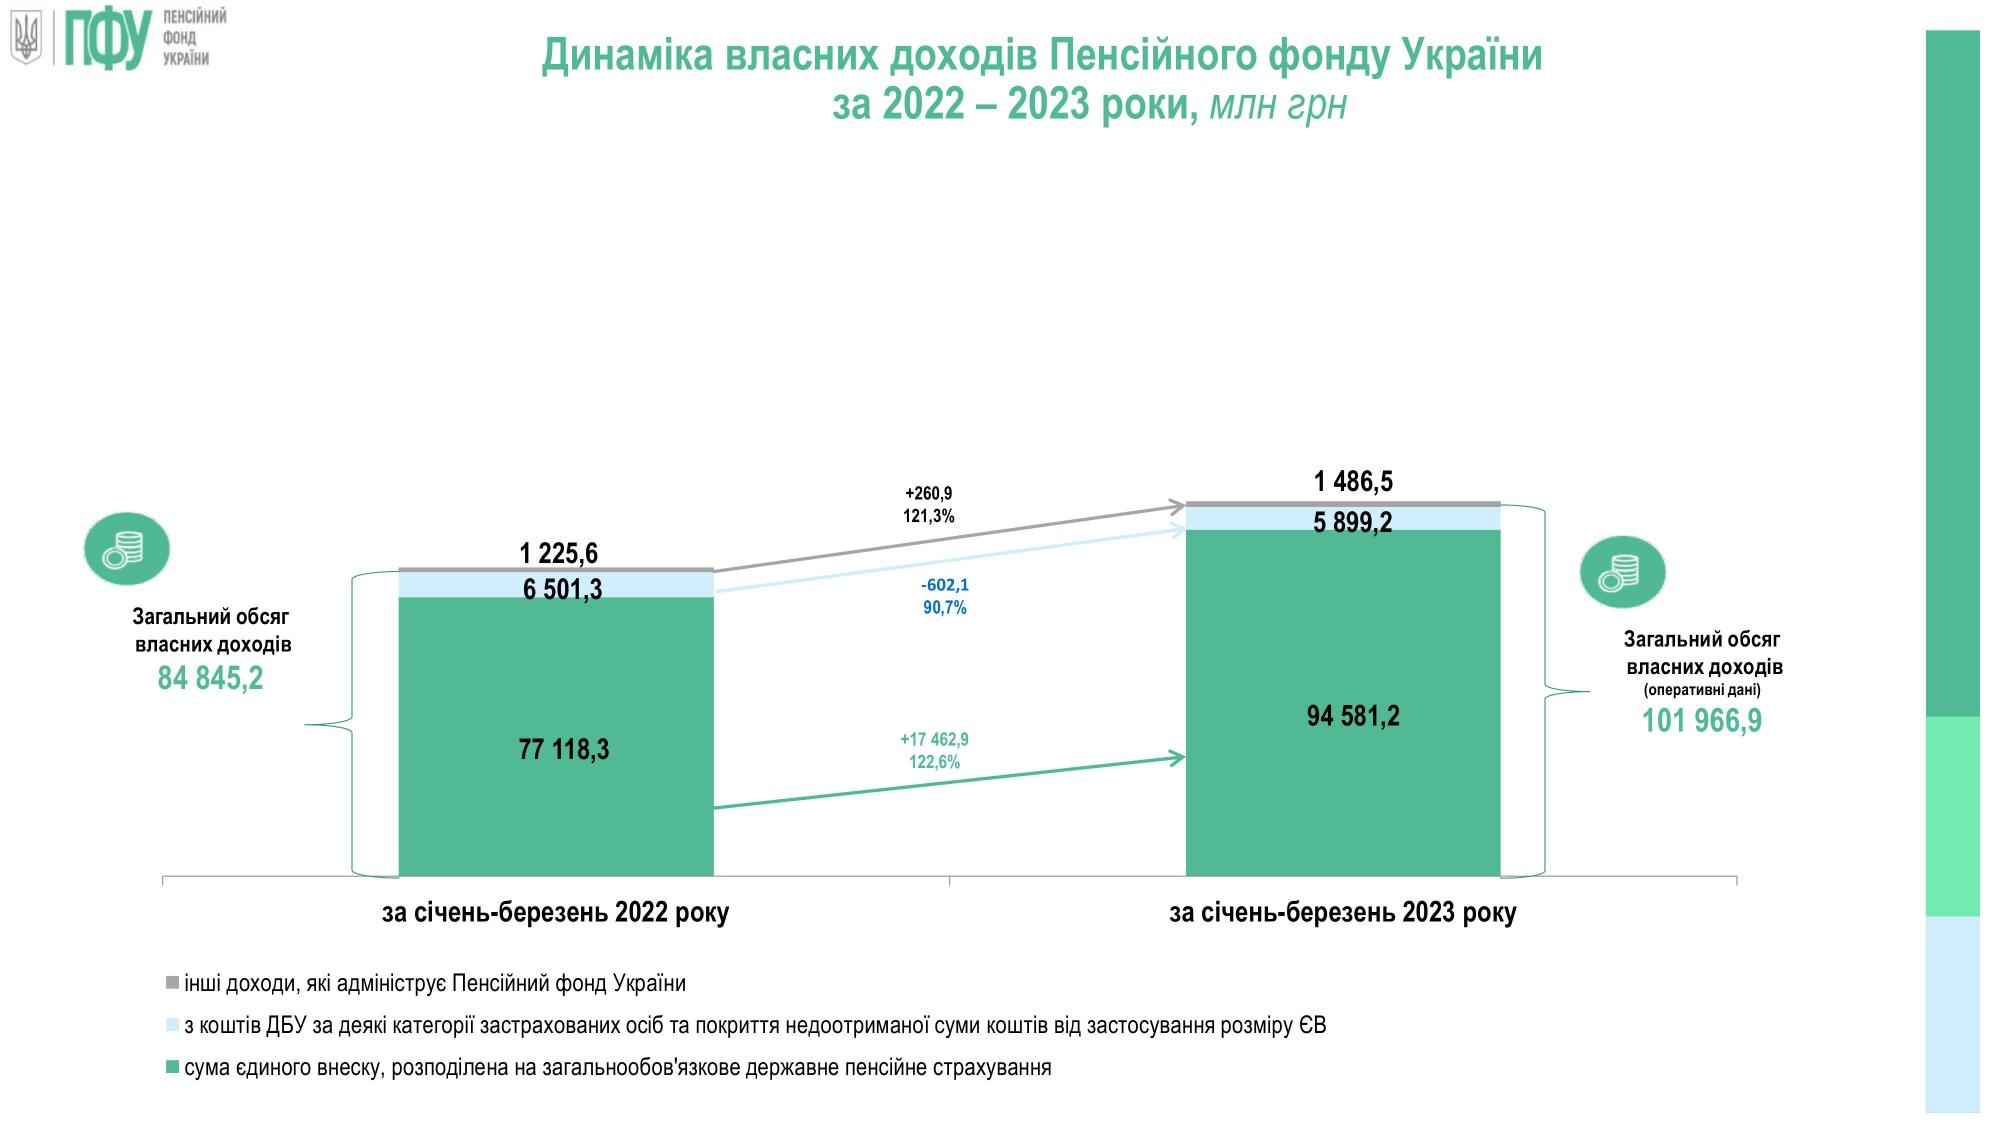 Доходи Пенсійного фонду України значно зросли у 2023 році: що на це вплинуло